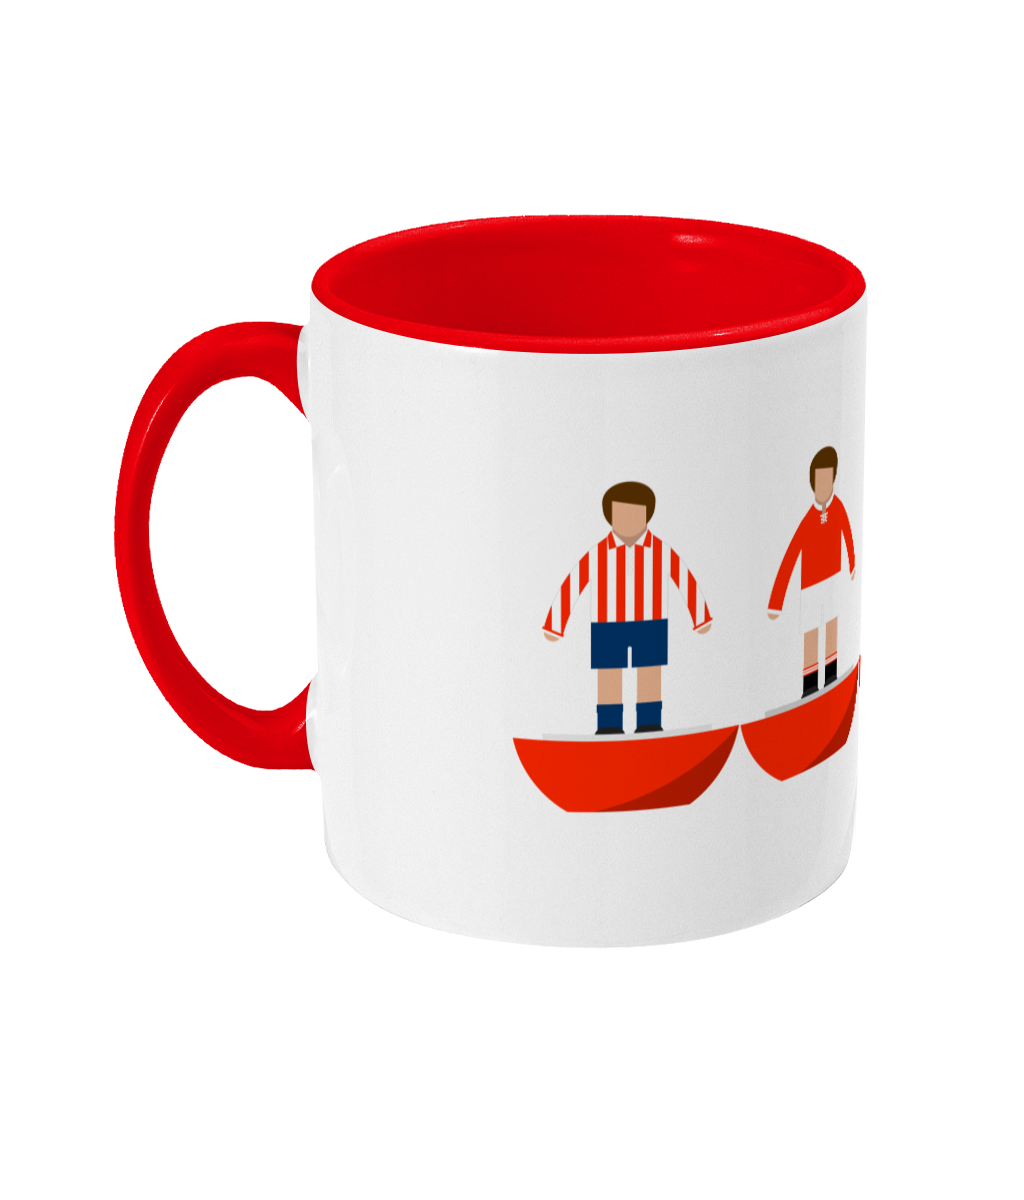 Football Kits 'Bournemouth combined' Mug